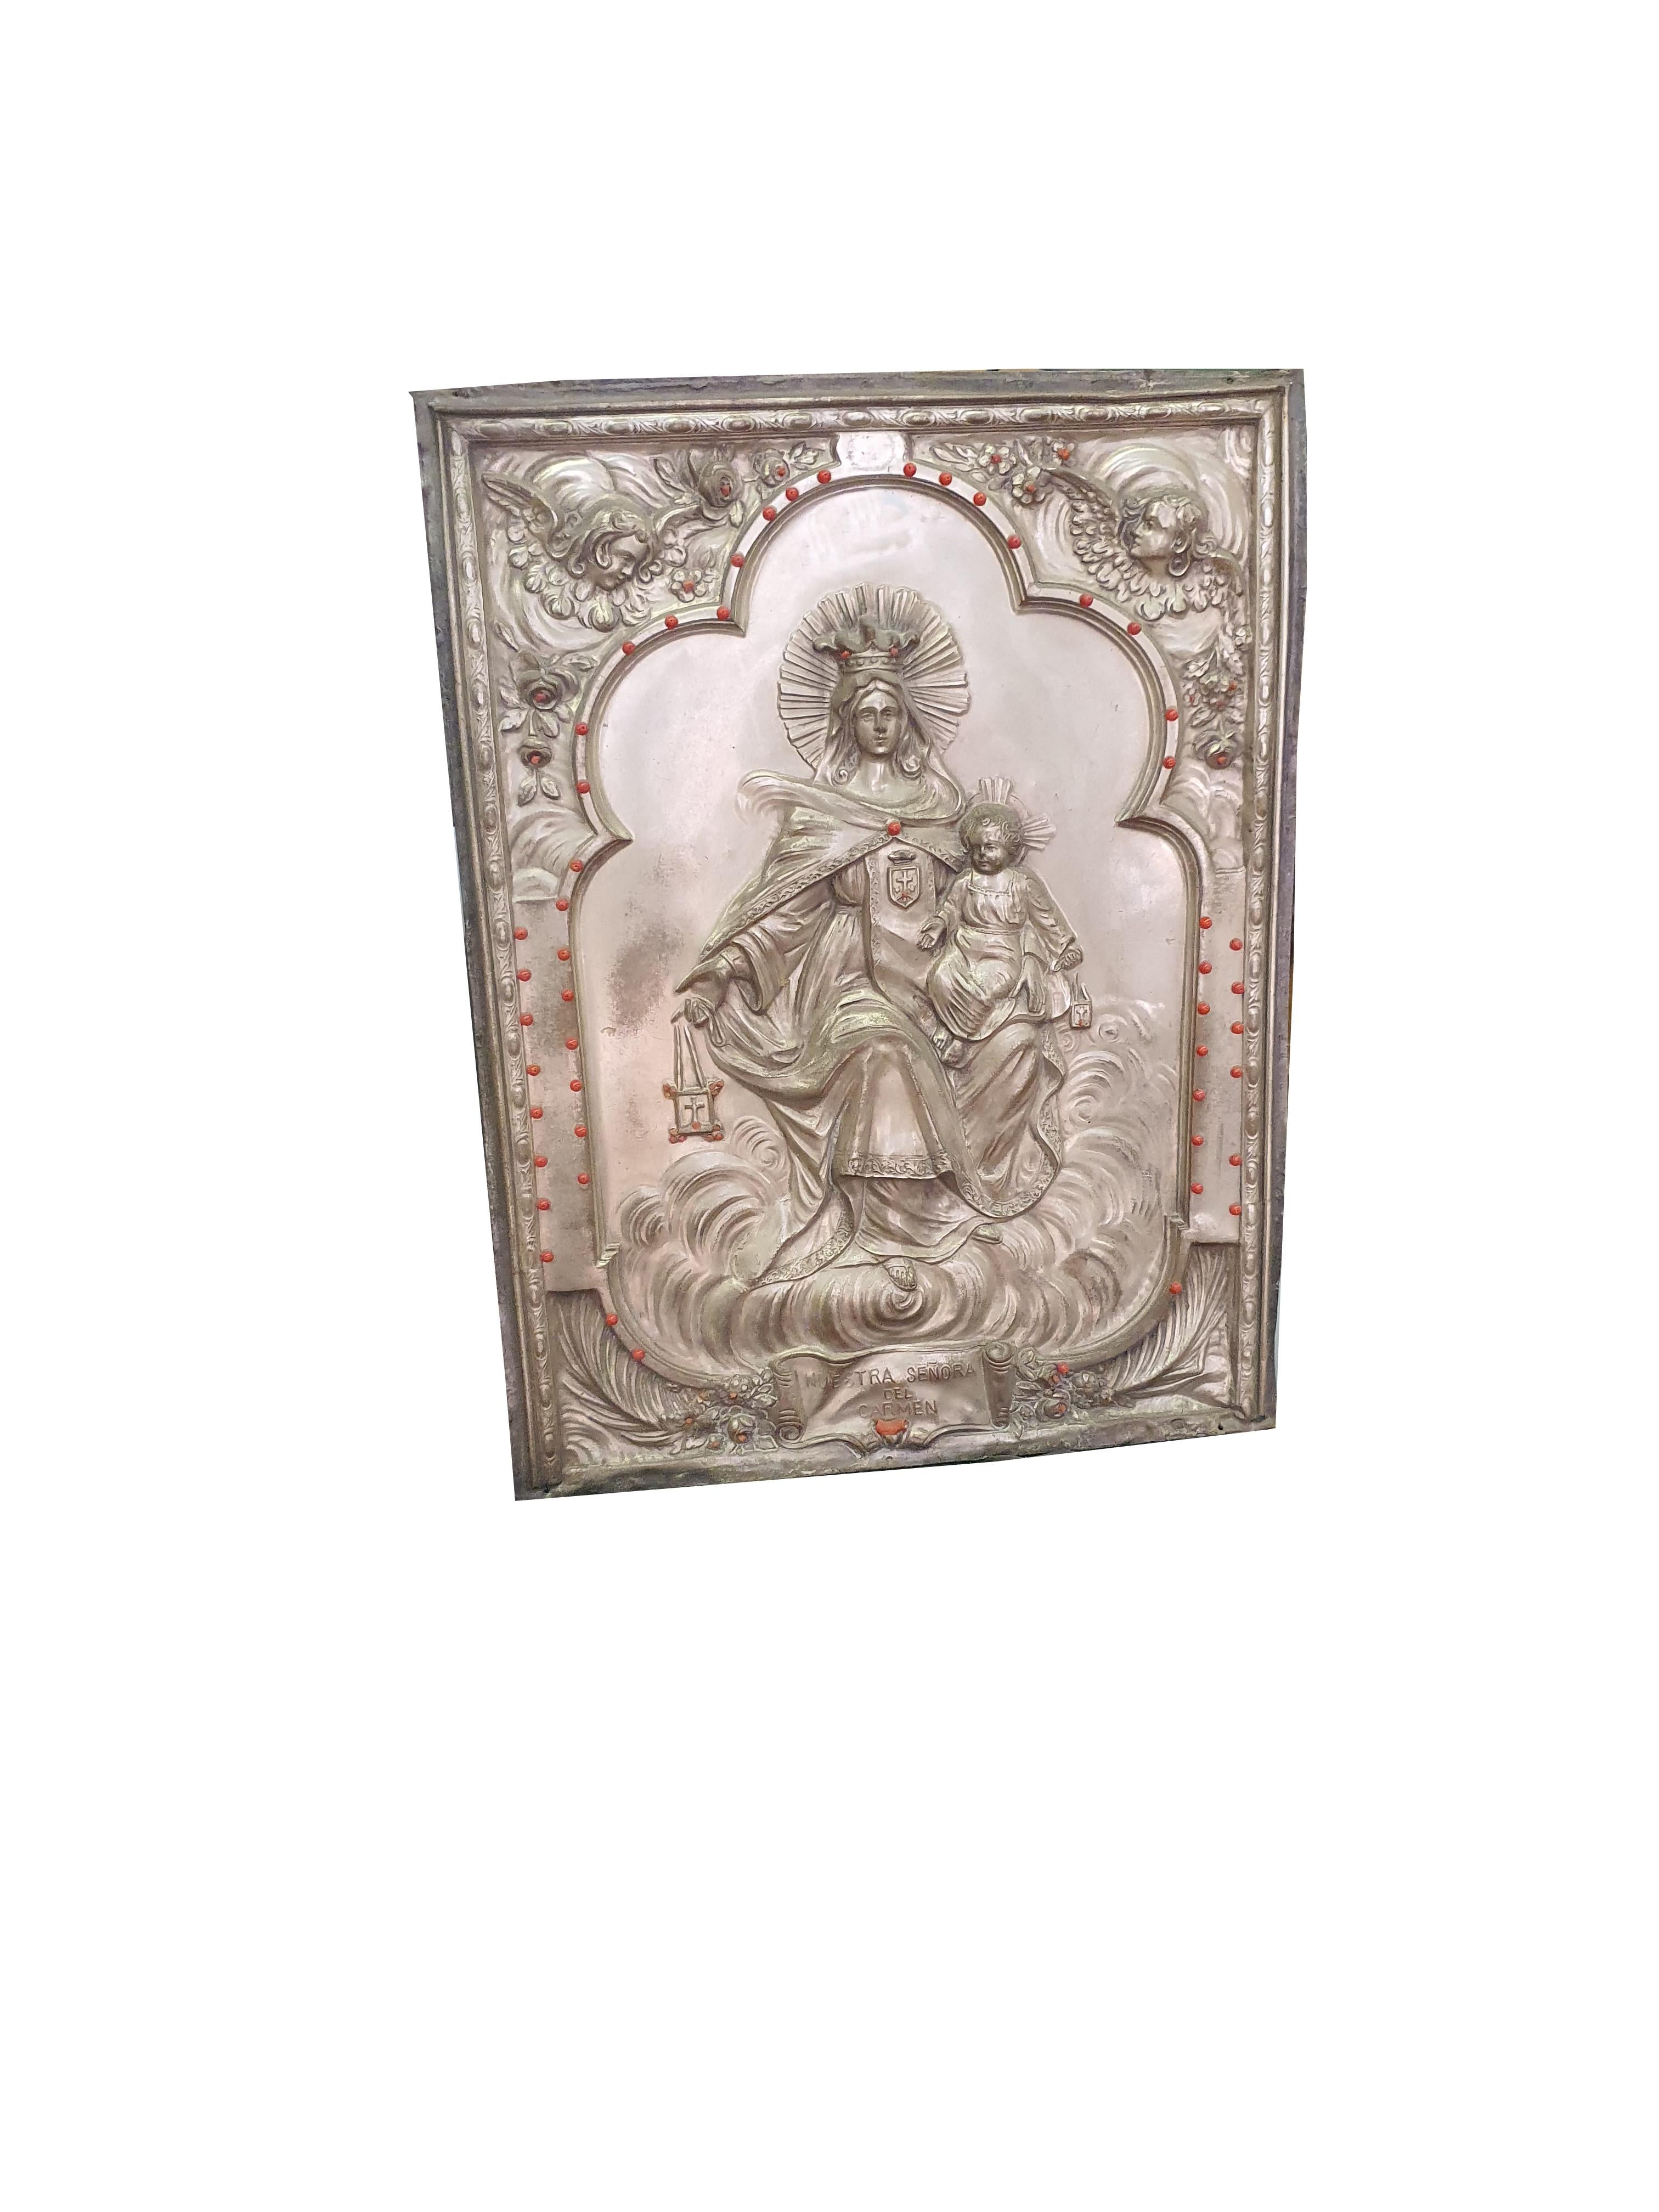 Plaque particulière en cuivre argenté, représentant la Madonna del Carmine, avec des inserts en corail de Trapani. Ci-dessous nous trouvons les mots 